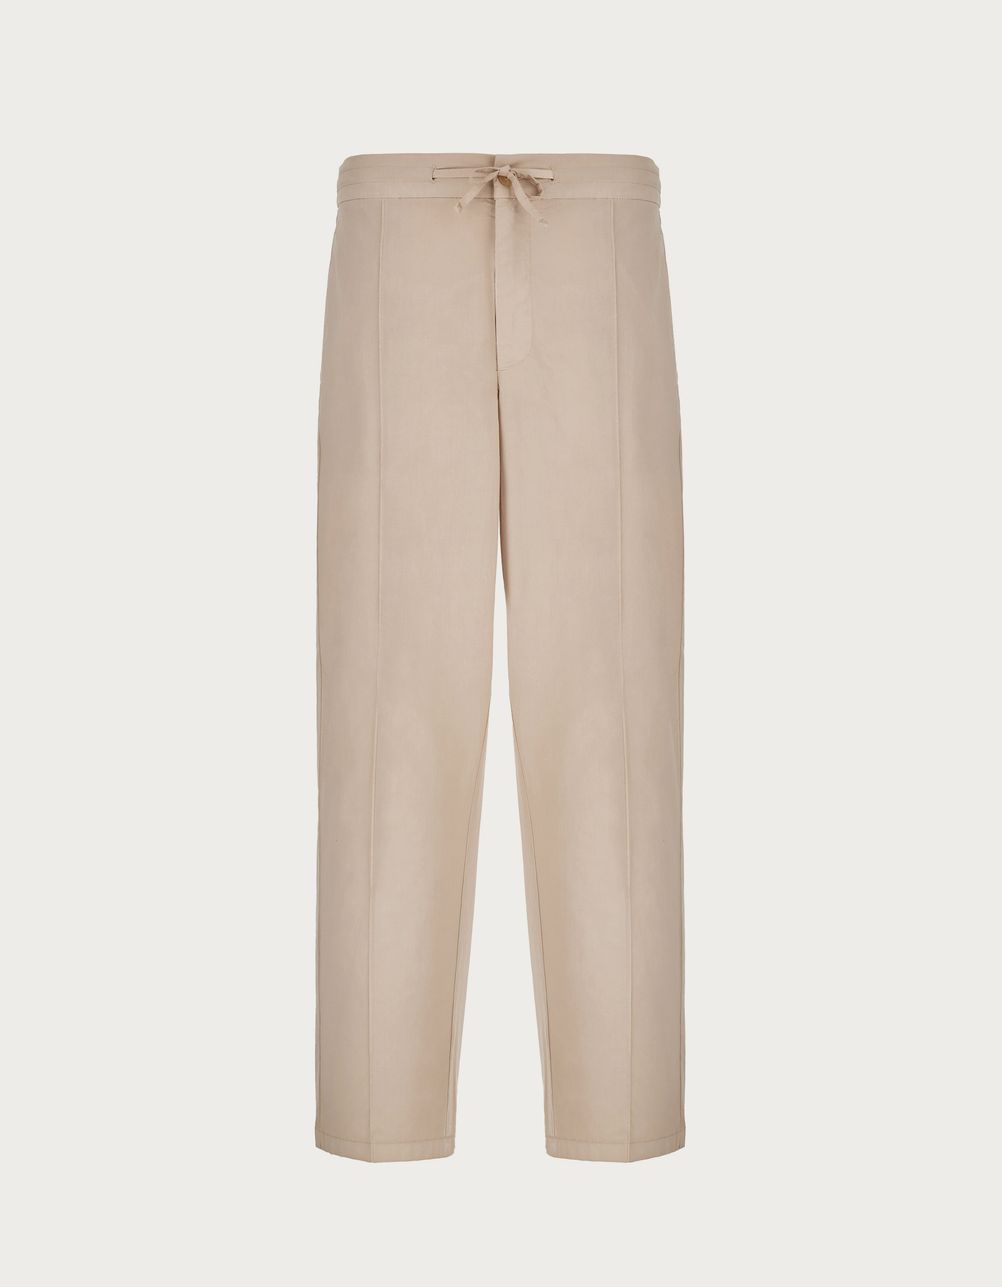 Pantalon chino sable avec cordon de serrage, coupe décontractée, en mousseline de coton teintée dans la masse.